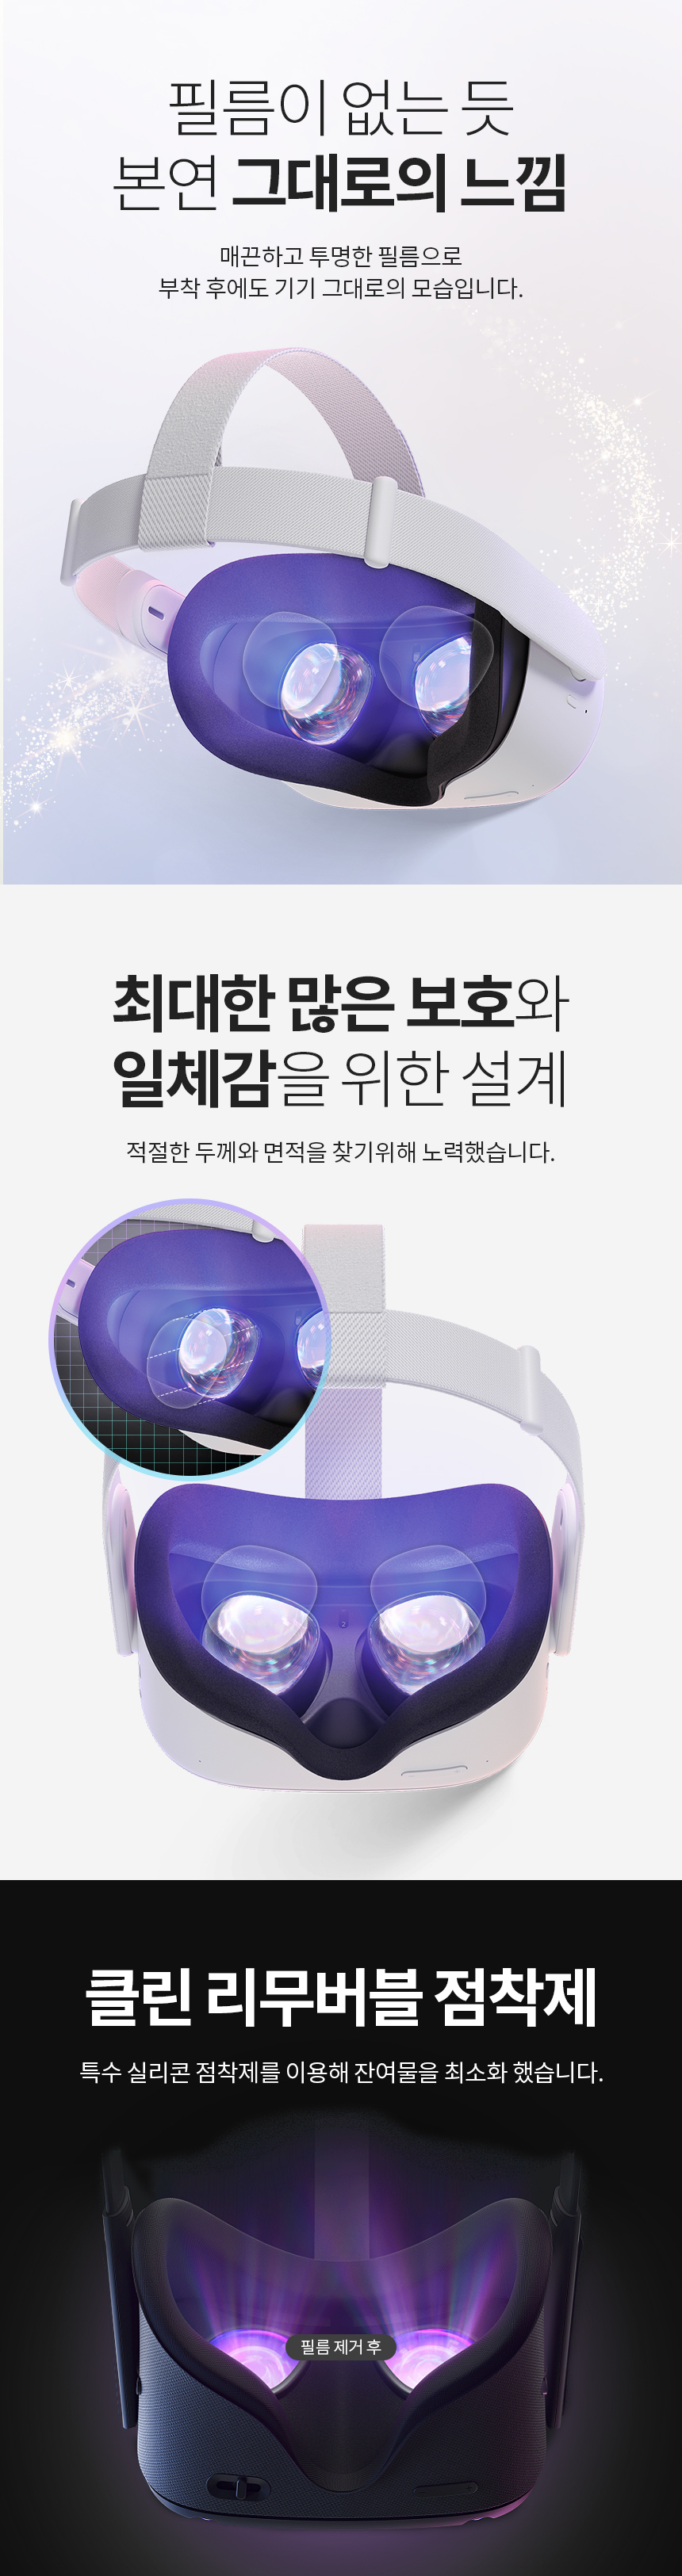 오큘러스 퀘스트2 리얼핏 렌즈 보호필름 2매 11,300원 - 스코코 디지털, 모바일 액세서리, 기타 주변기기, VR/3D안경 바보사랑 오큘러스 퀘스트2 리얼핏 렌즈 보호필름 2매 11,300원 - 스코코 디지털, 모바일 액세서리, 기타 주변기기, VR/3D안경 바보사랑